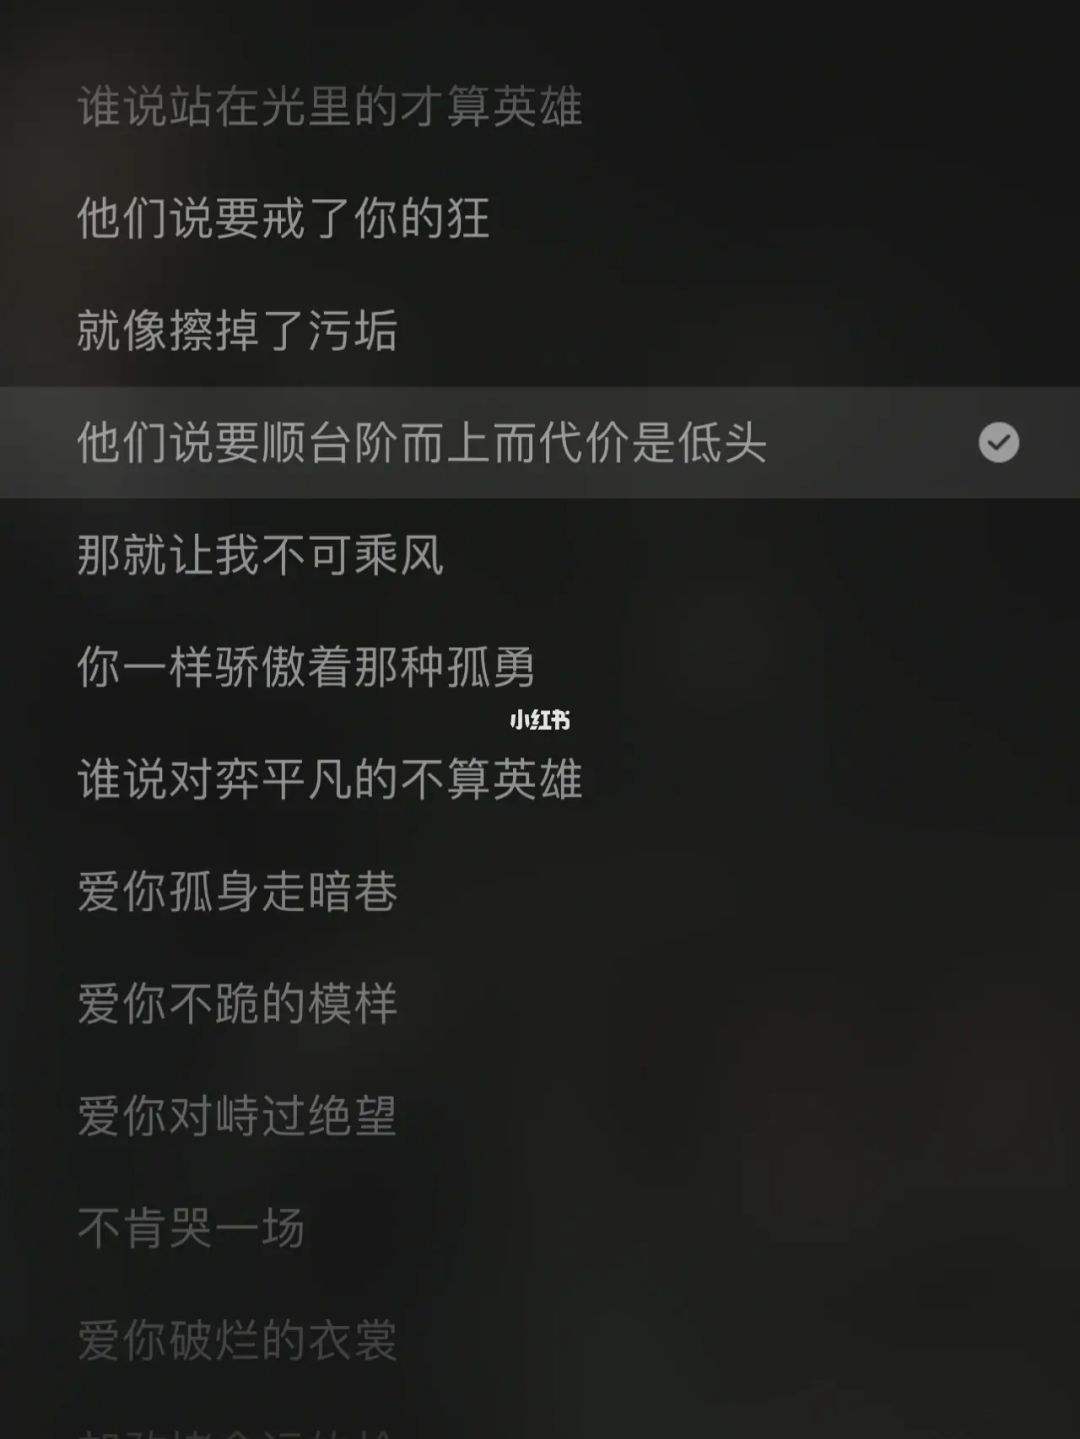 包含孤勇者中文歌词电子版的词条